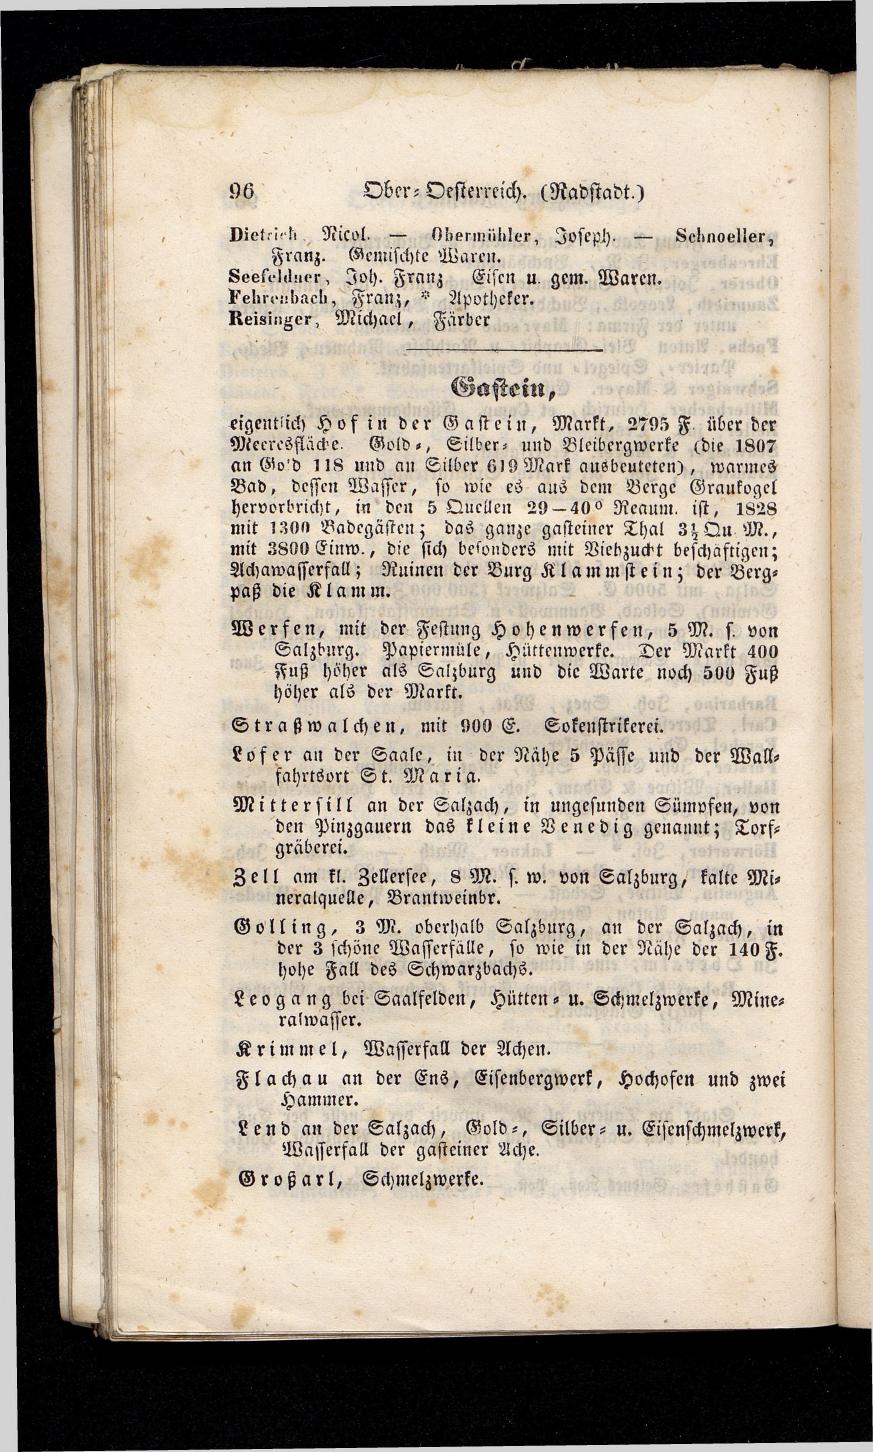 Grosses Adressbuch der Kaufleute. No. 13. Oesterreich ober u. unter der Enns 1844 - Seite 100